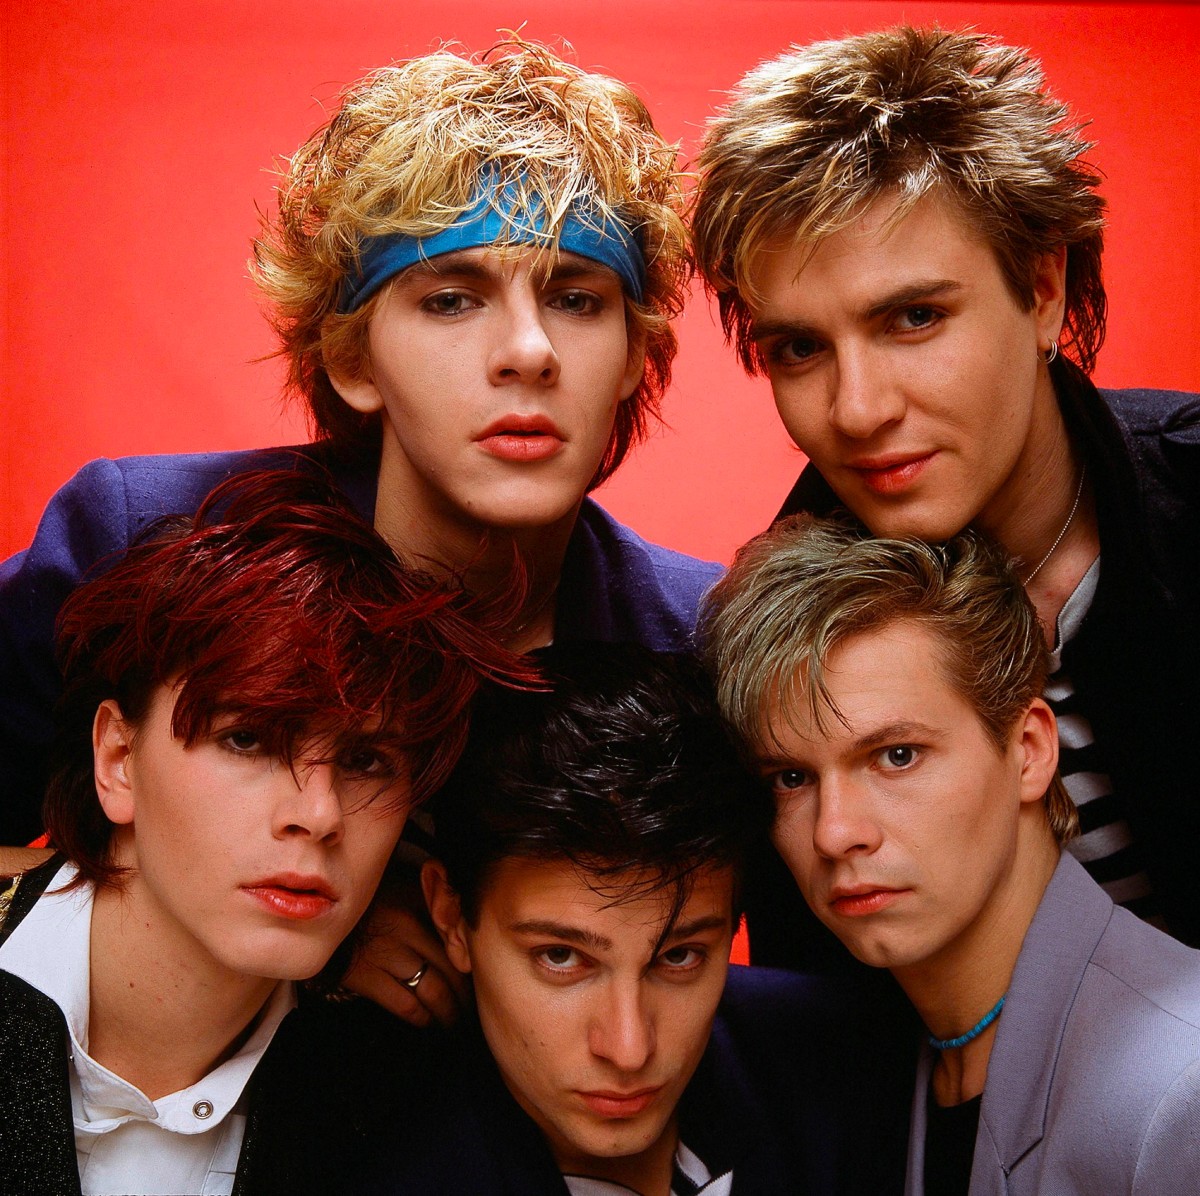 The band Duran Duran at a photoshoot